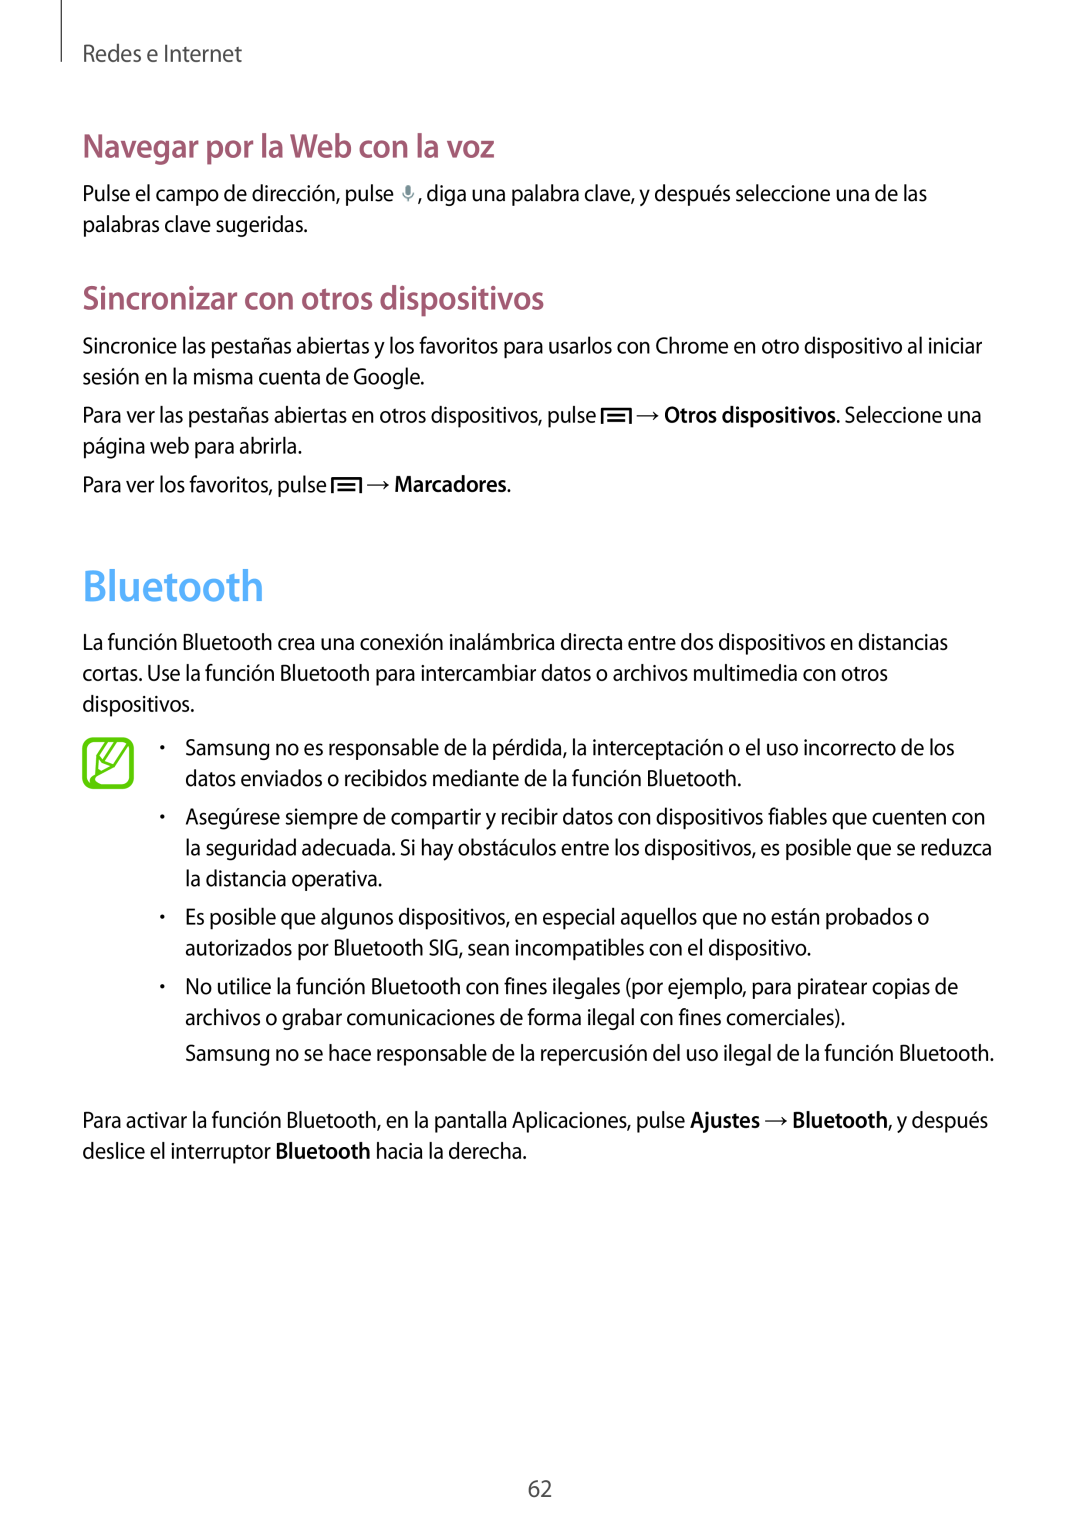 Samsung SM-T3150ZWAATL Bluetooth, Sincronizar con otros dispositivos, Navegar por la Web con la voz, Redes e Internet 